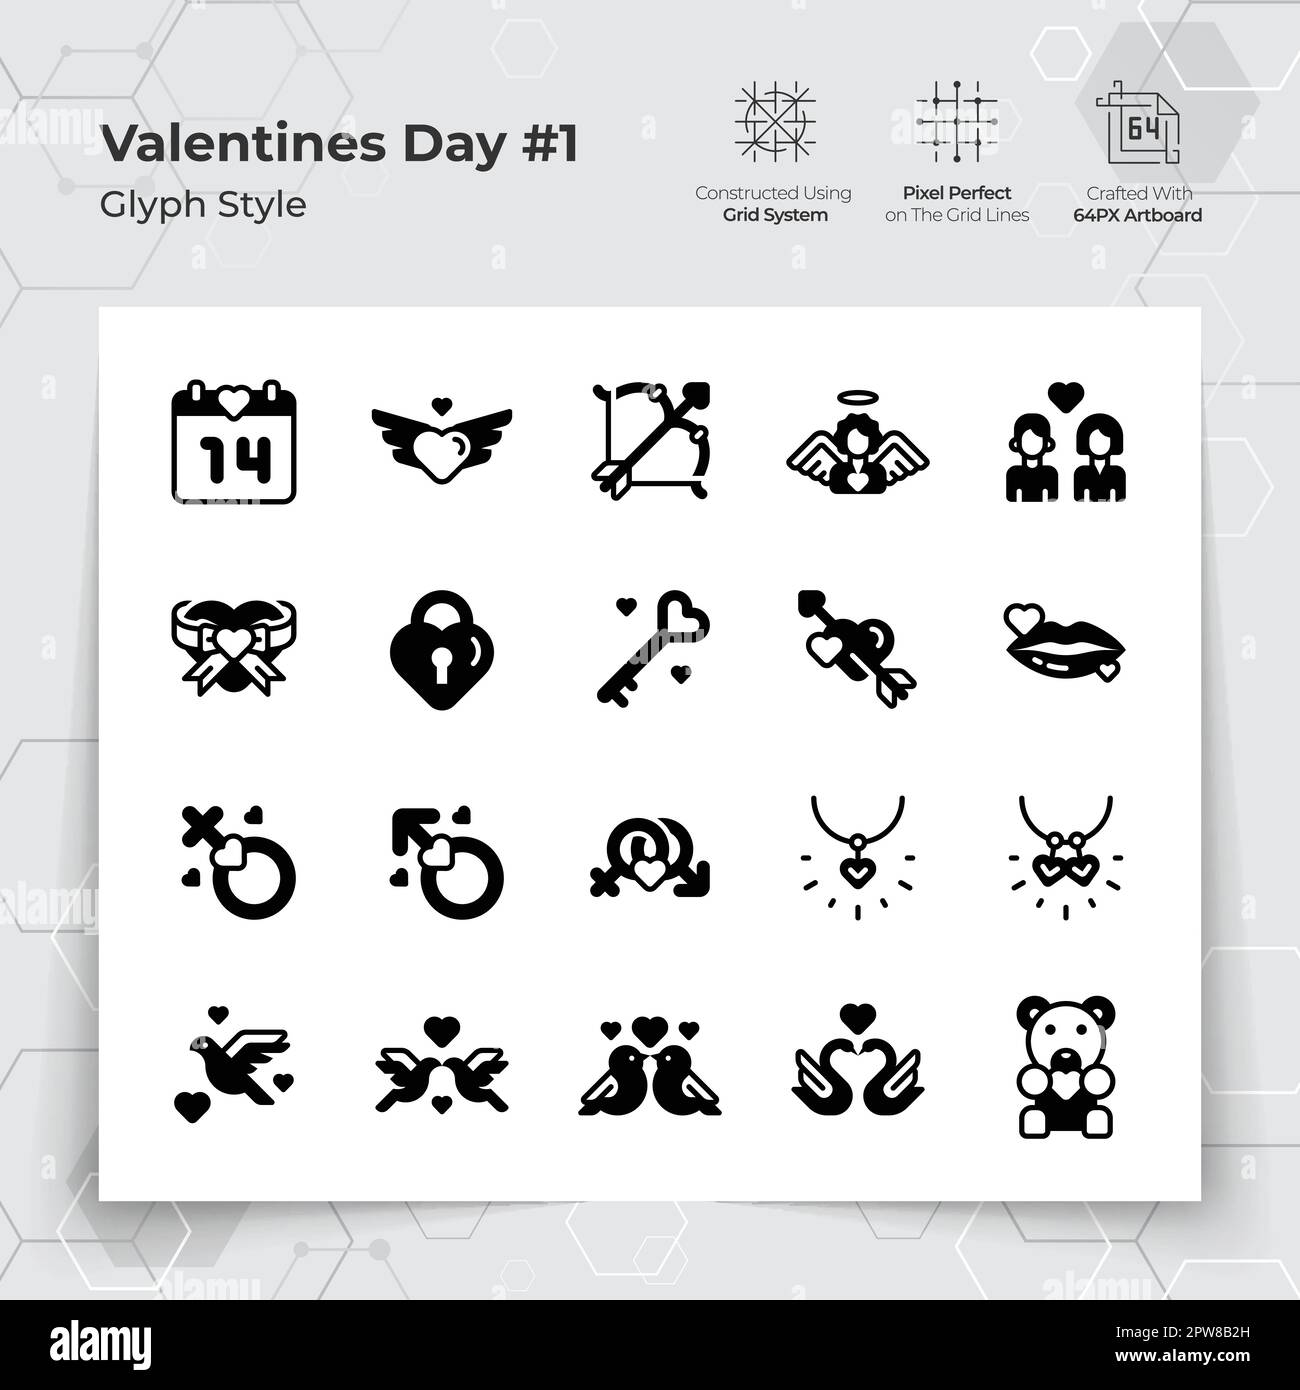 Valentinstag-Ikone in Glyph Black mit einem Liebes- und Herzmotiv. Eine Sammlung von Liebes- und Romantik-Vektorsymbolen für die Valentinstagsfeier. Stock Vektor